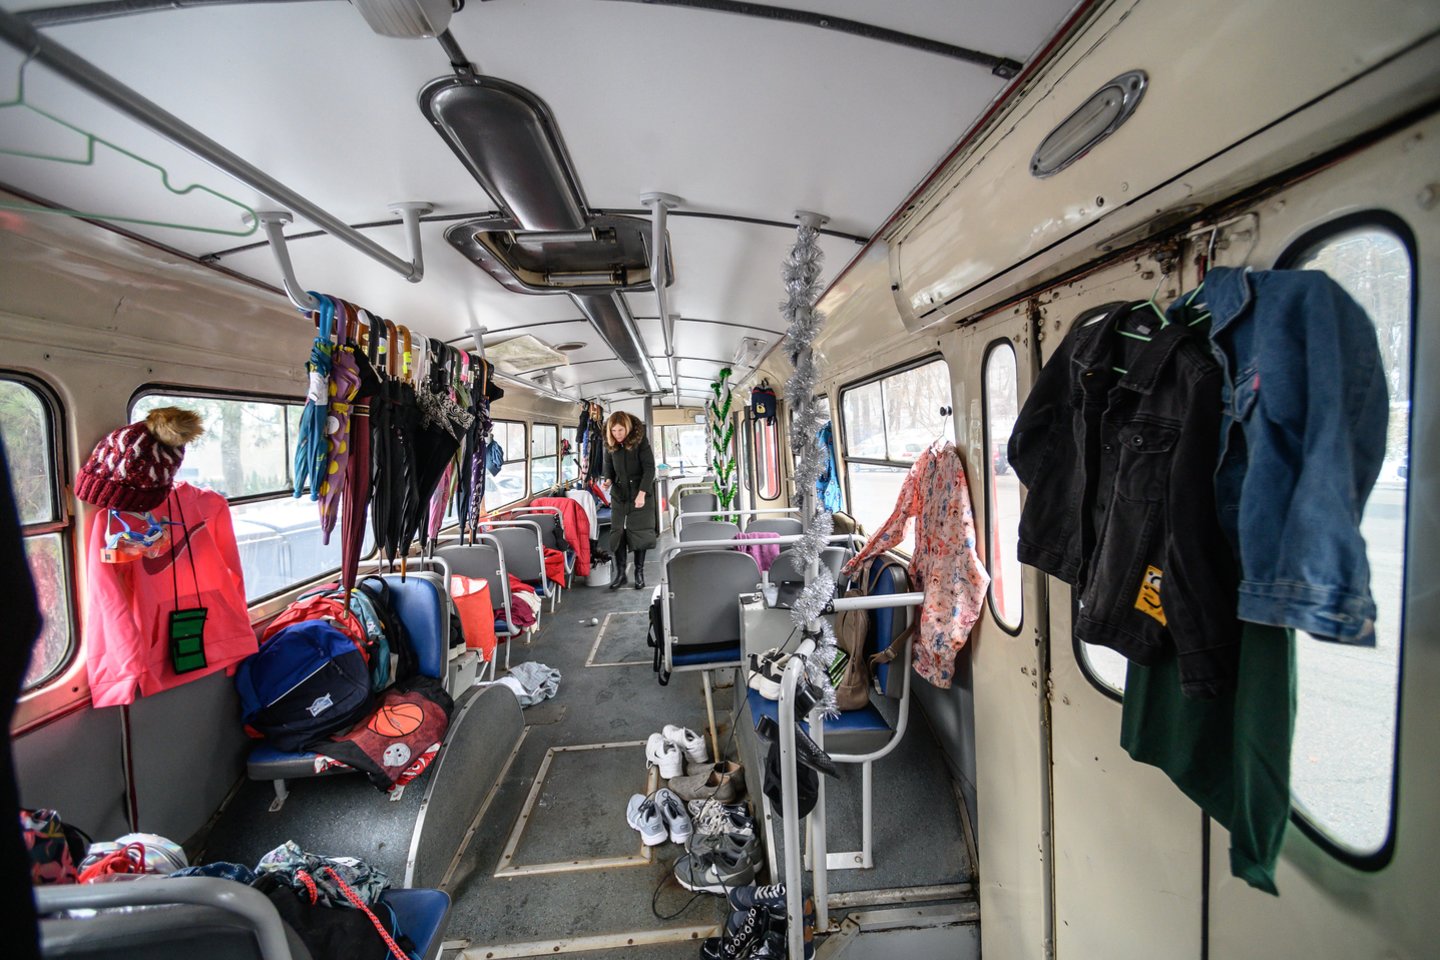 Vilniaus vežėjai penktadienį išradingai priminė užmaršuoliams, kur ieškoti miesto autobusuose ir troleibusuose paliktų daiktų.<br>V.Skaraičio nuotr.